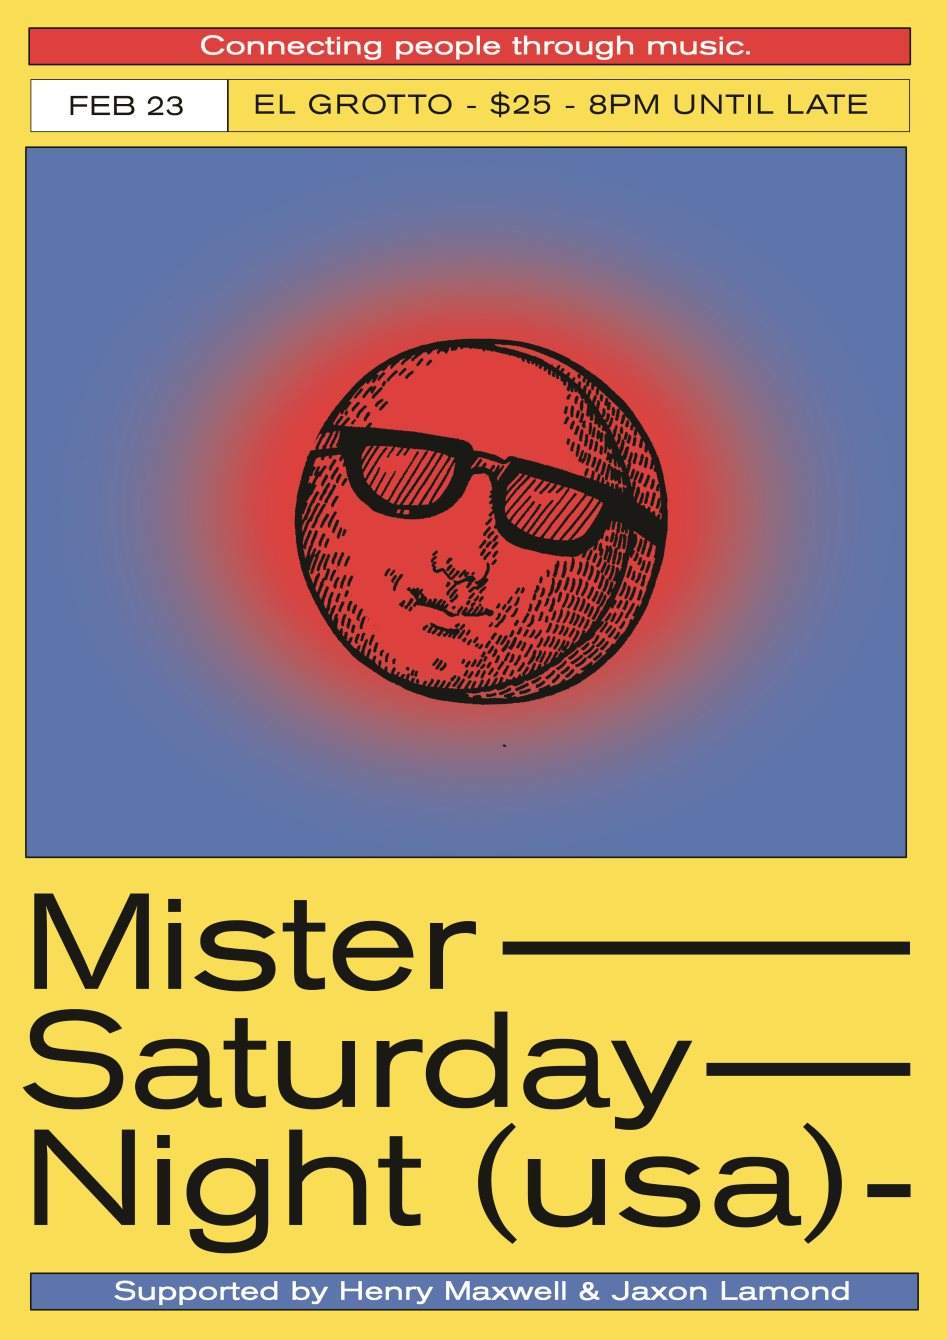 Mister Saturday Night Mister Saturday Night — Perth - Página frontal